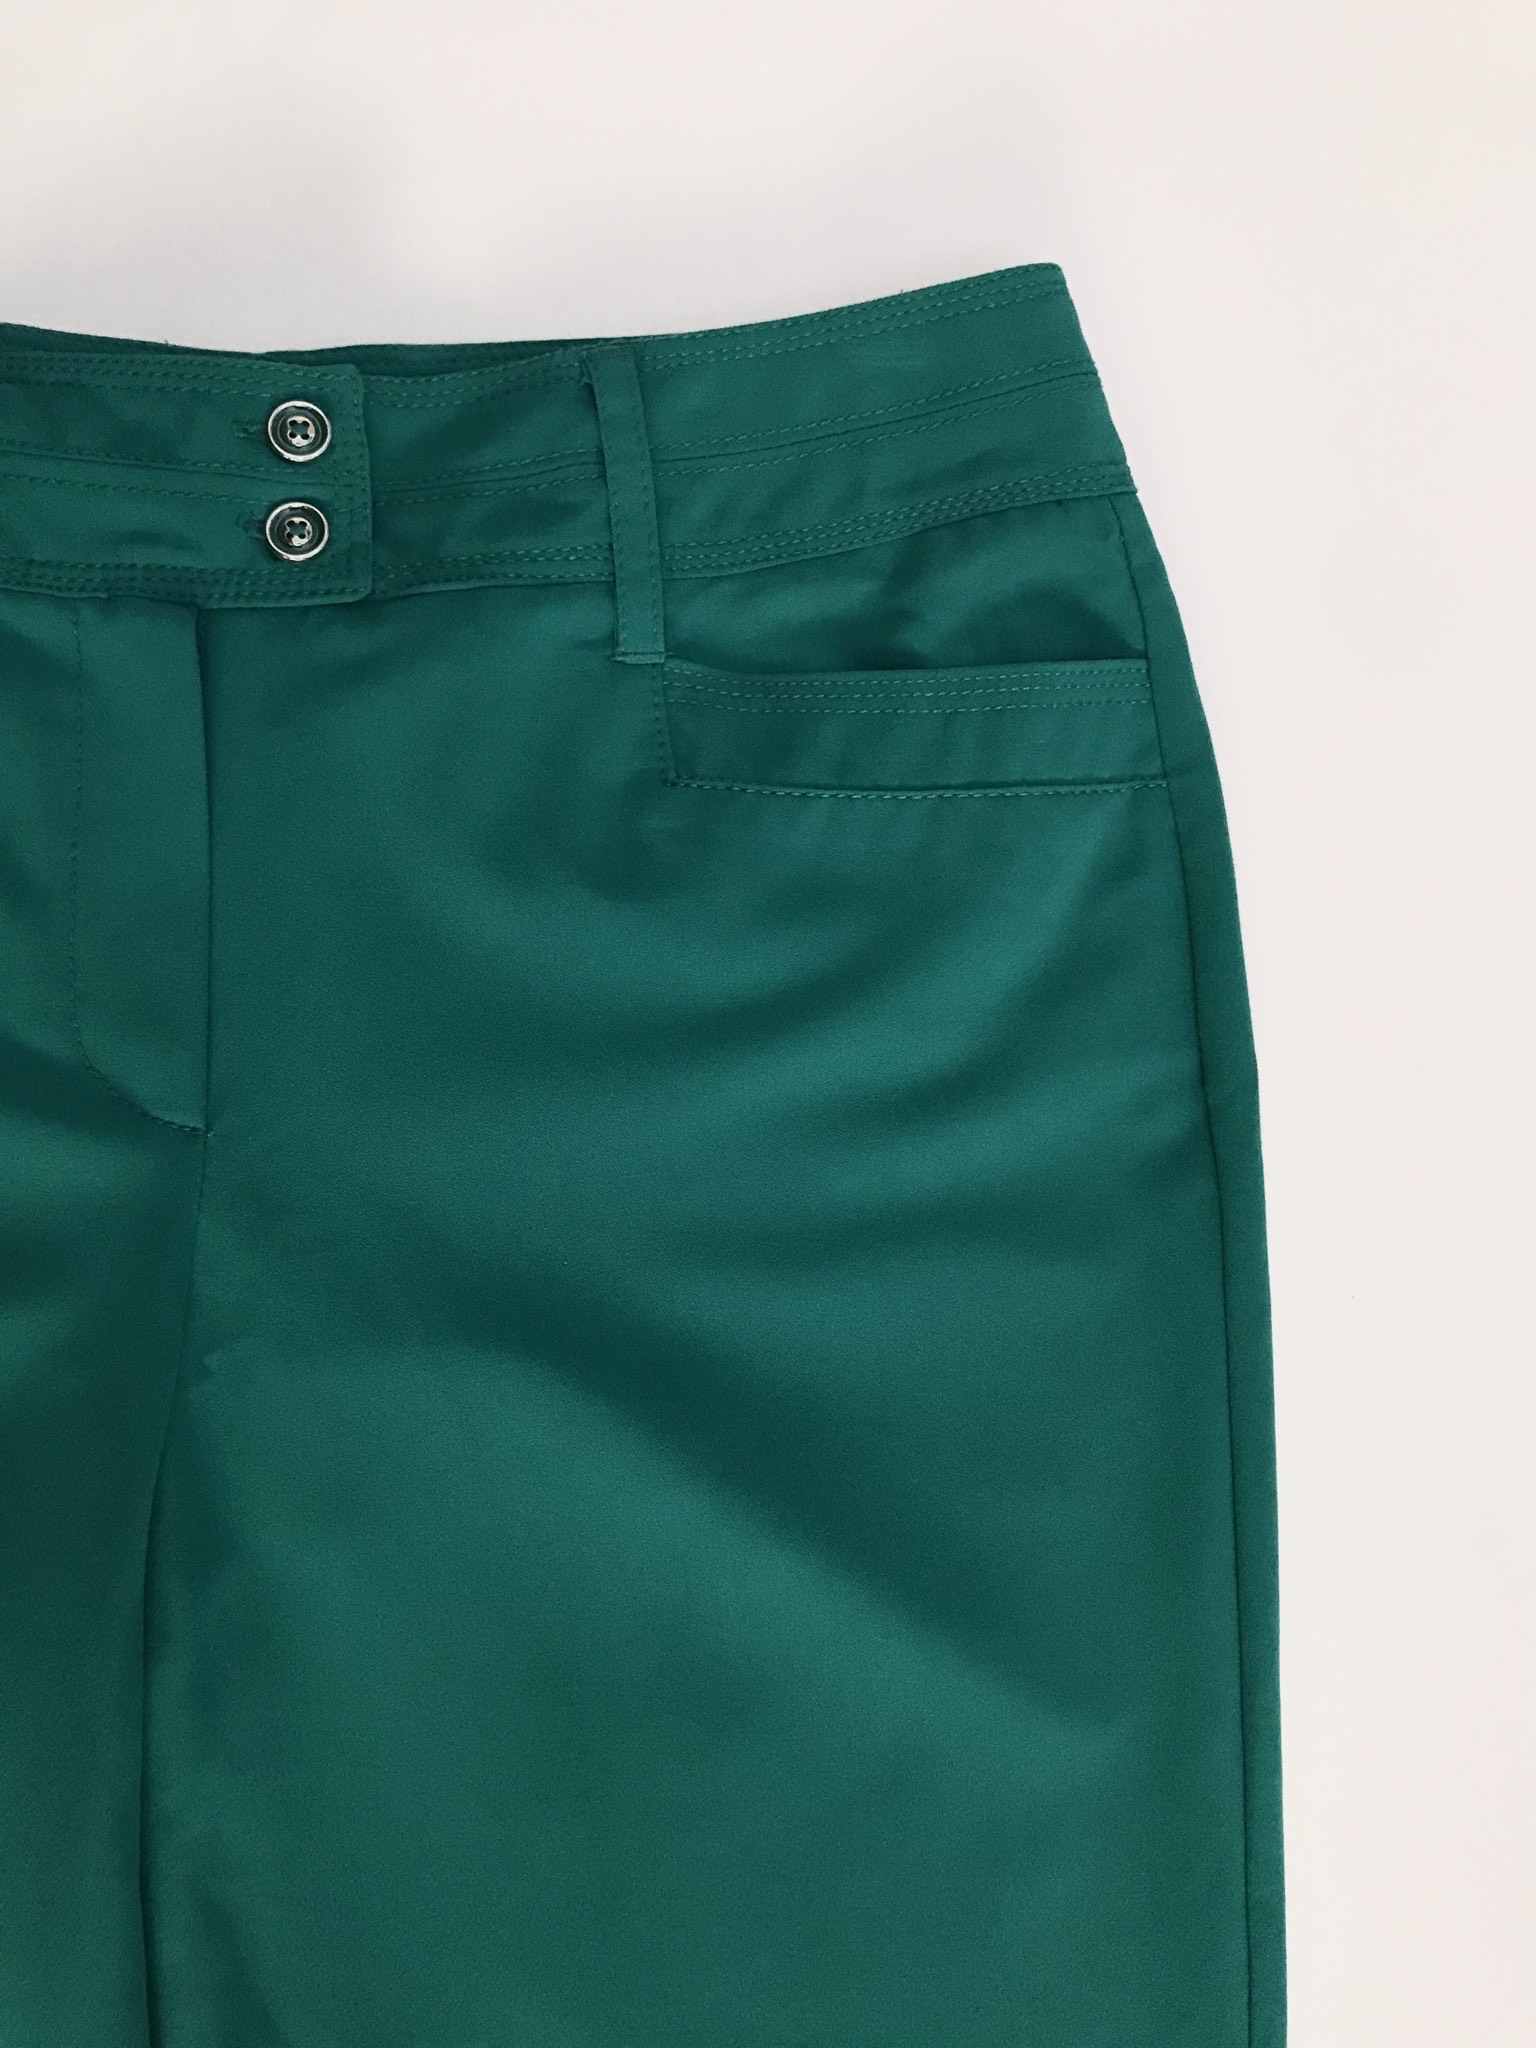 Pantalón verde jade, tela plana no stretch, 4 bolsillos, corte recto. Color hermoso
Talla 32 (US10)